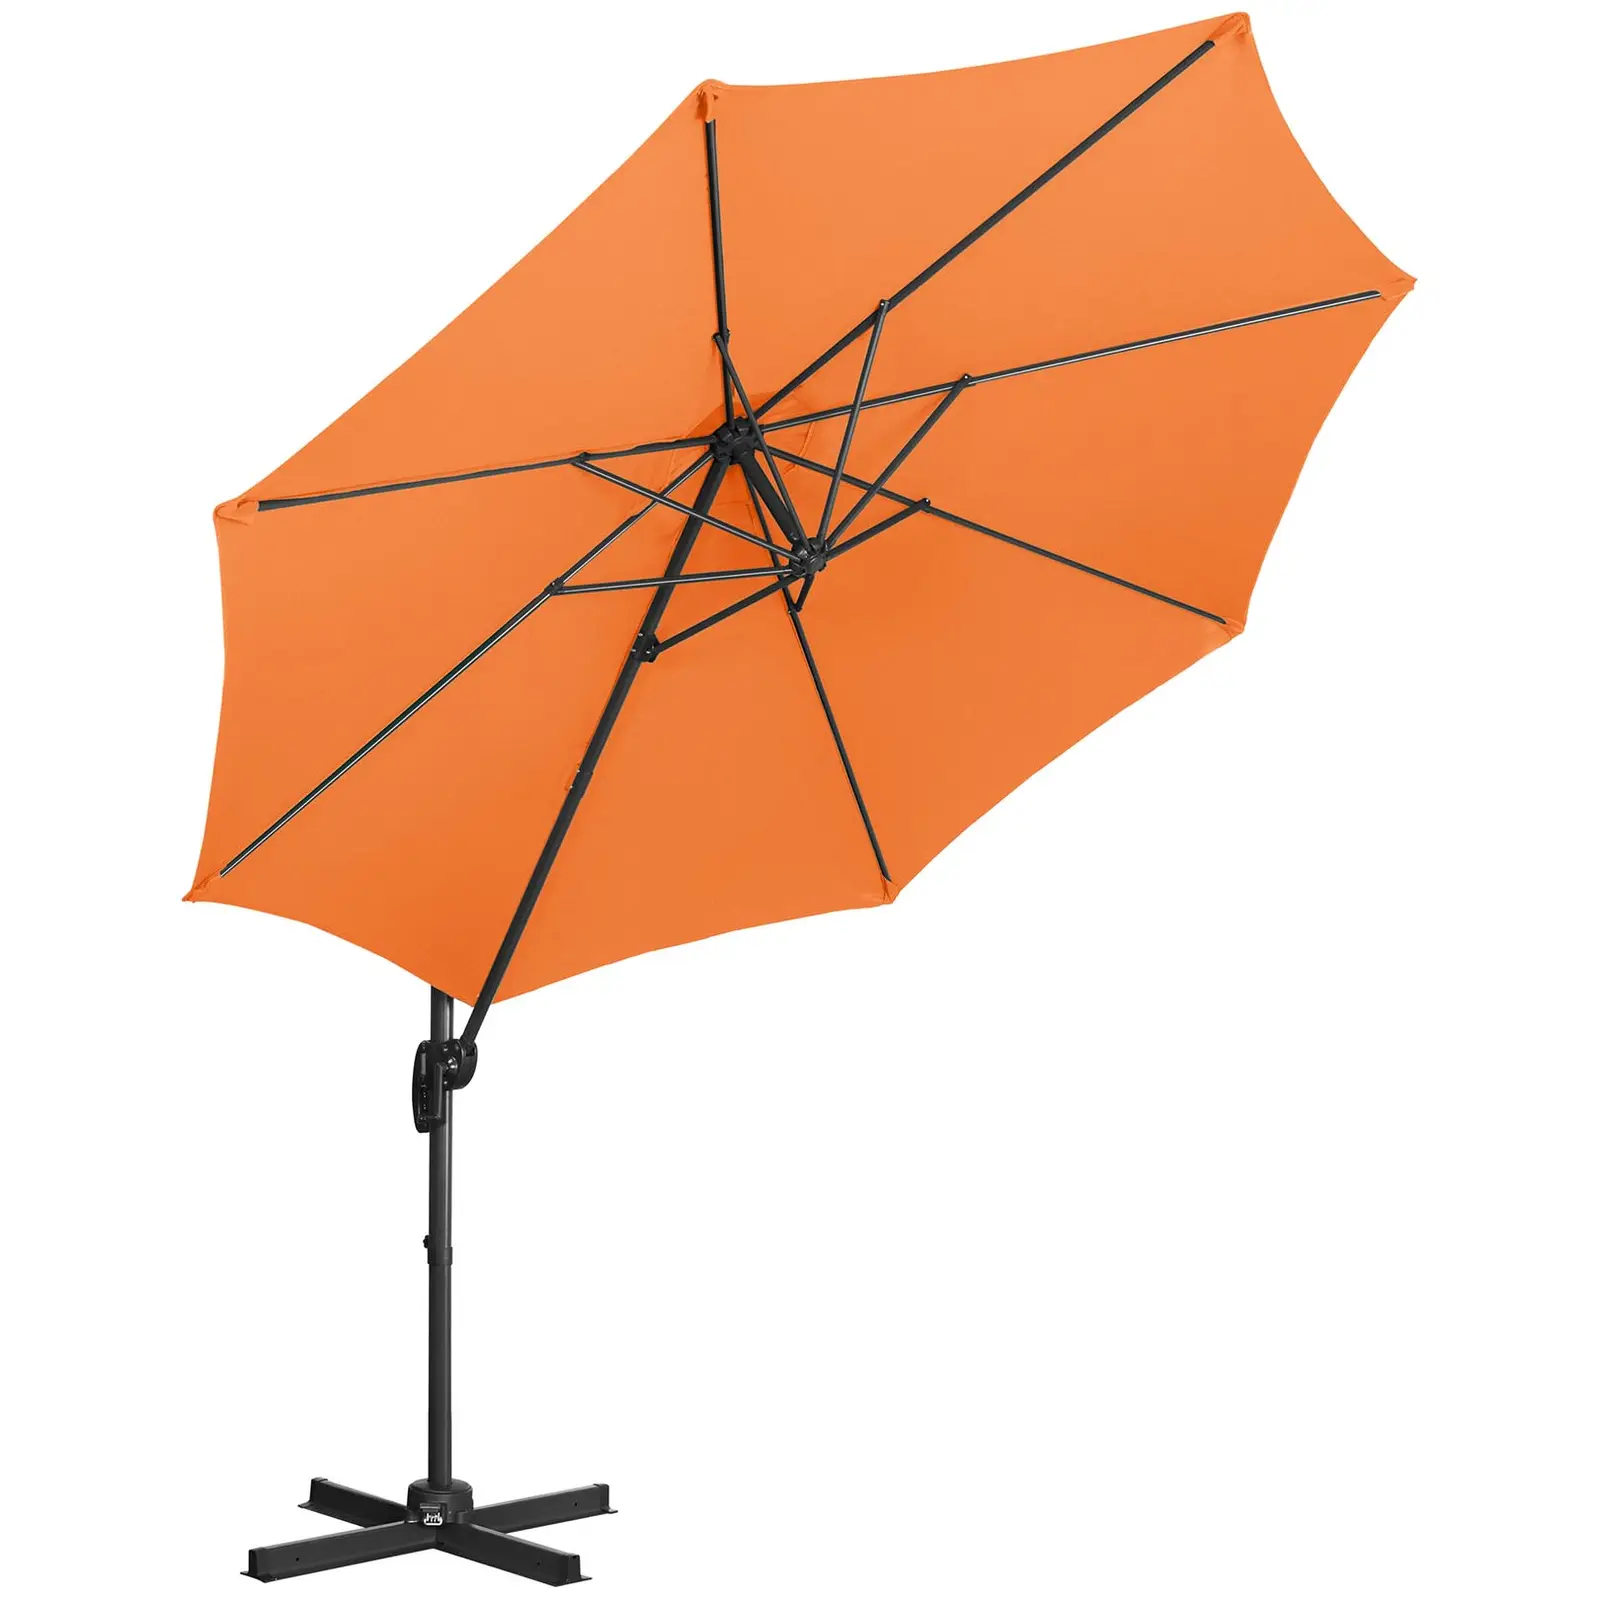 Hængeparasol - orange - rund - 300 cm i diameter